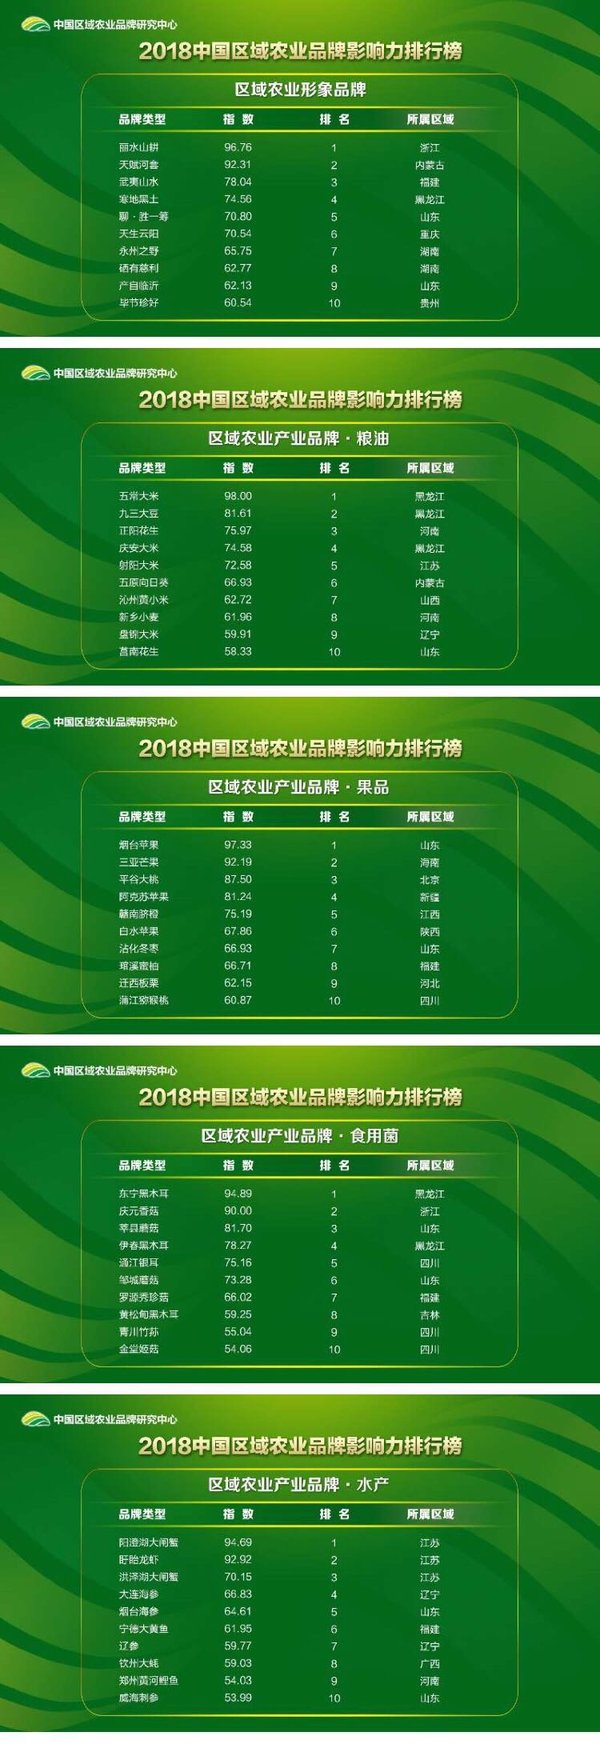 2018中国区域农业品牌影响力排行榜